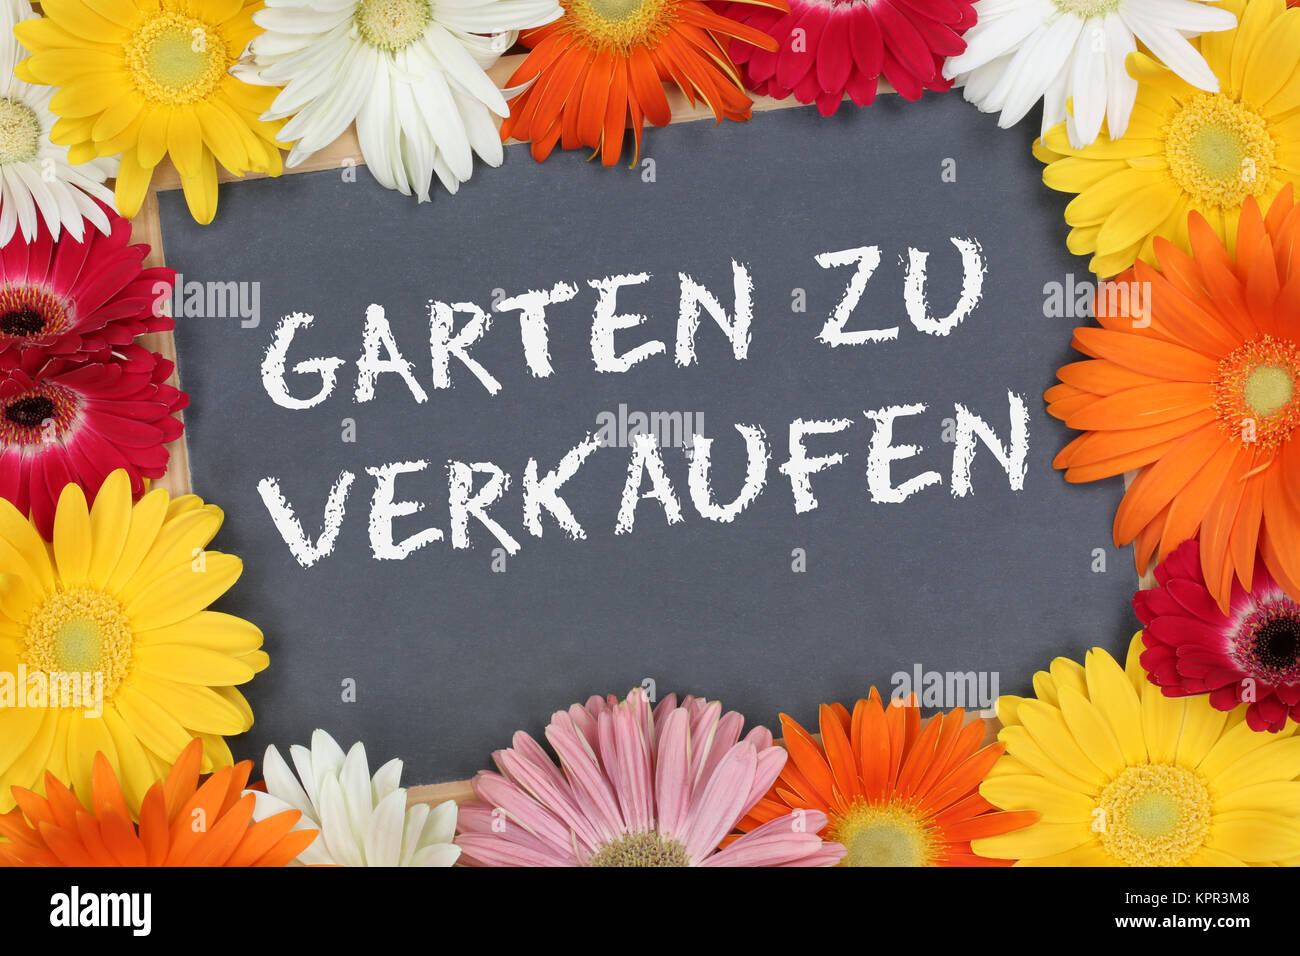 Garten zu verkaufen Verkauf mit bunten Blumen Blume Schild Tafel Stock Photo